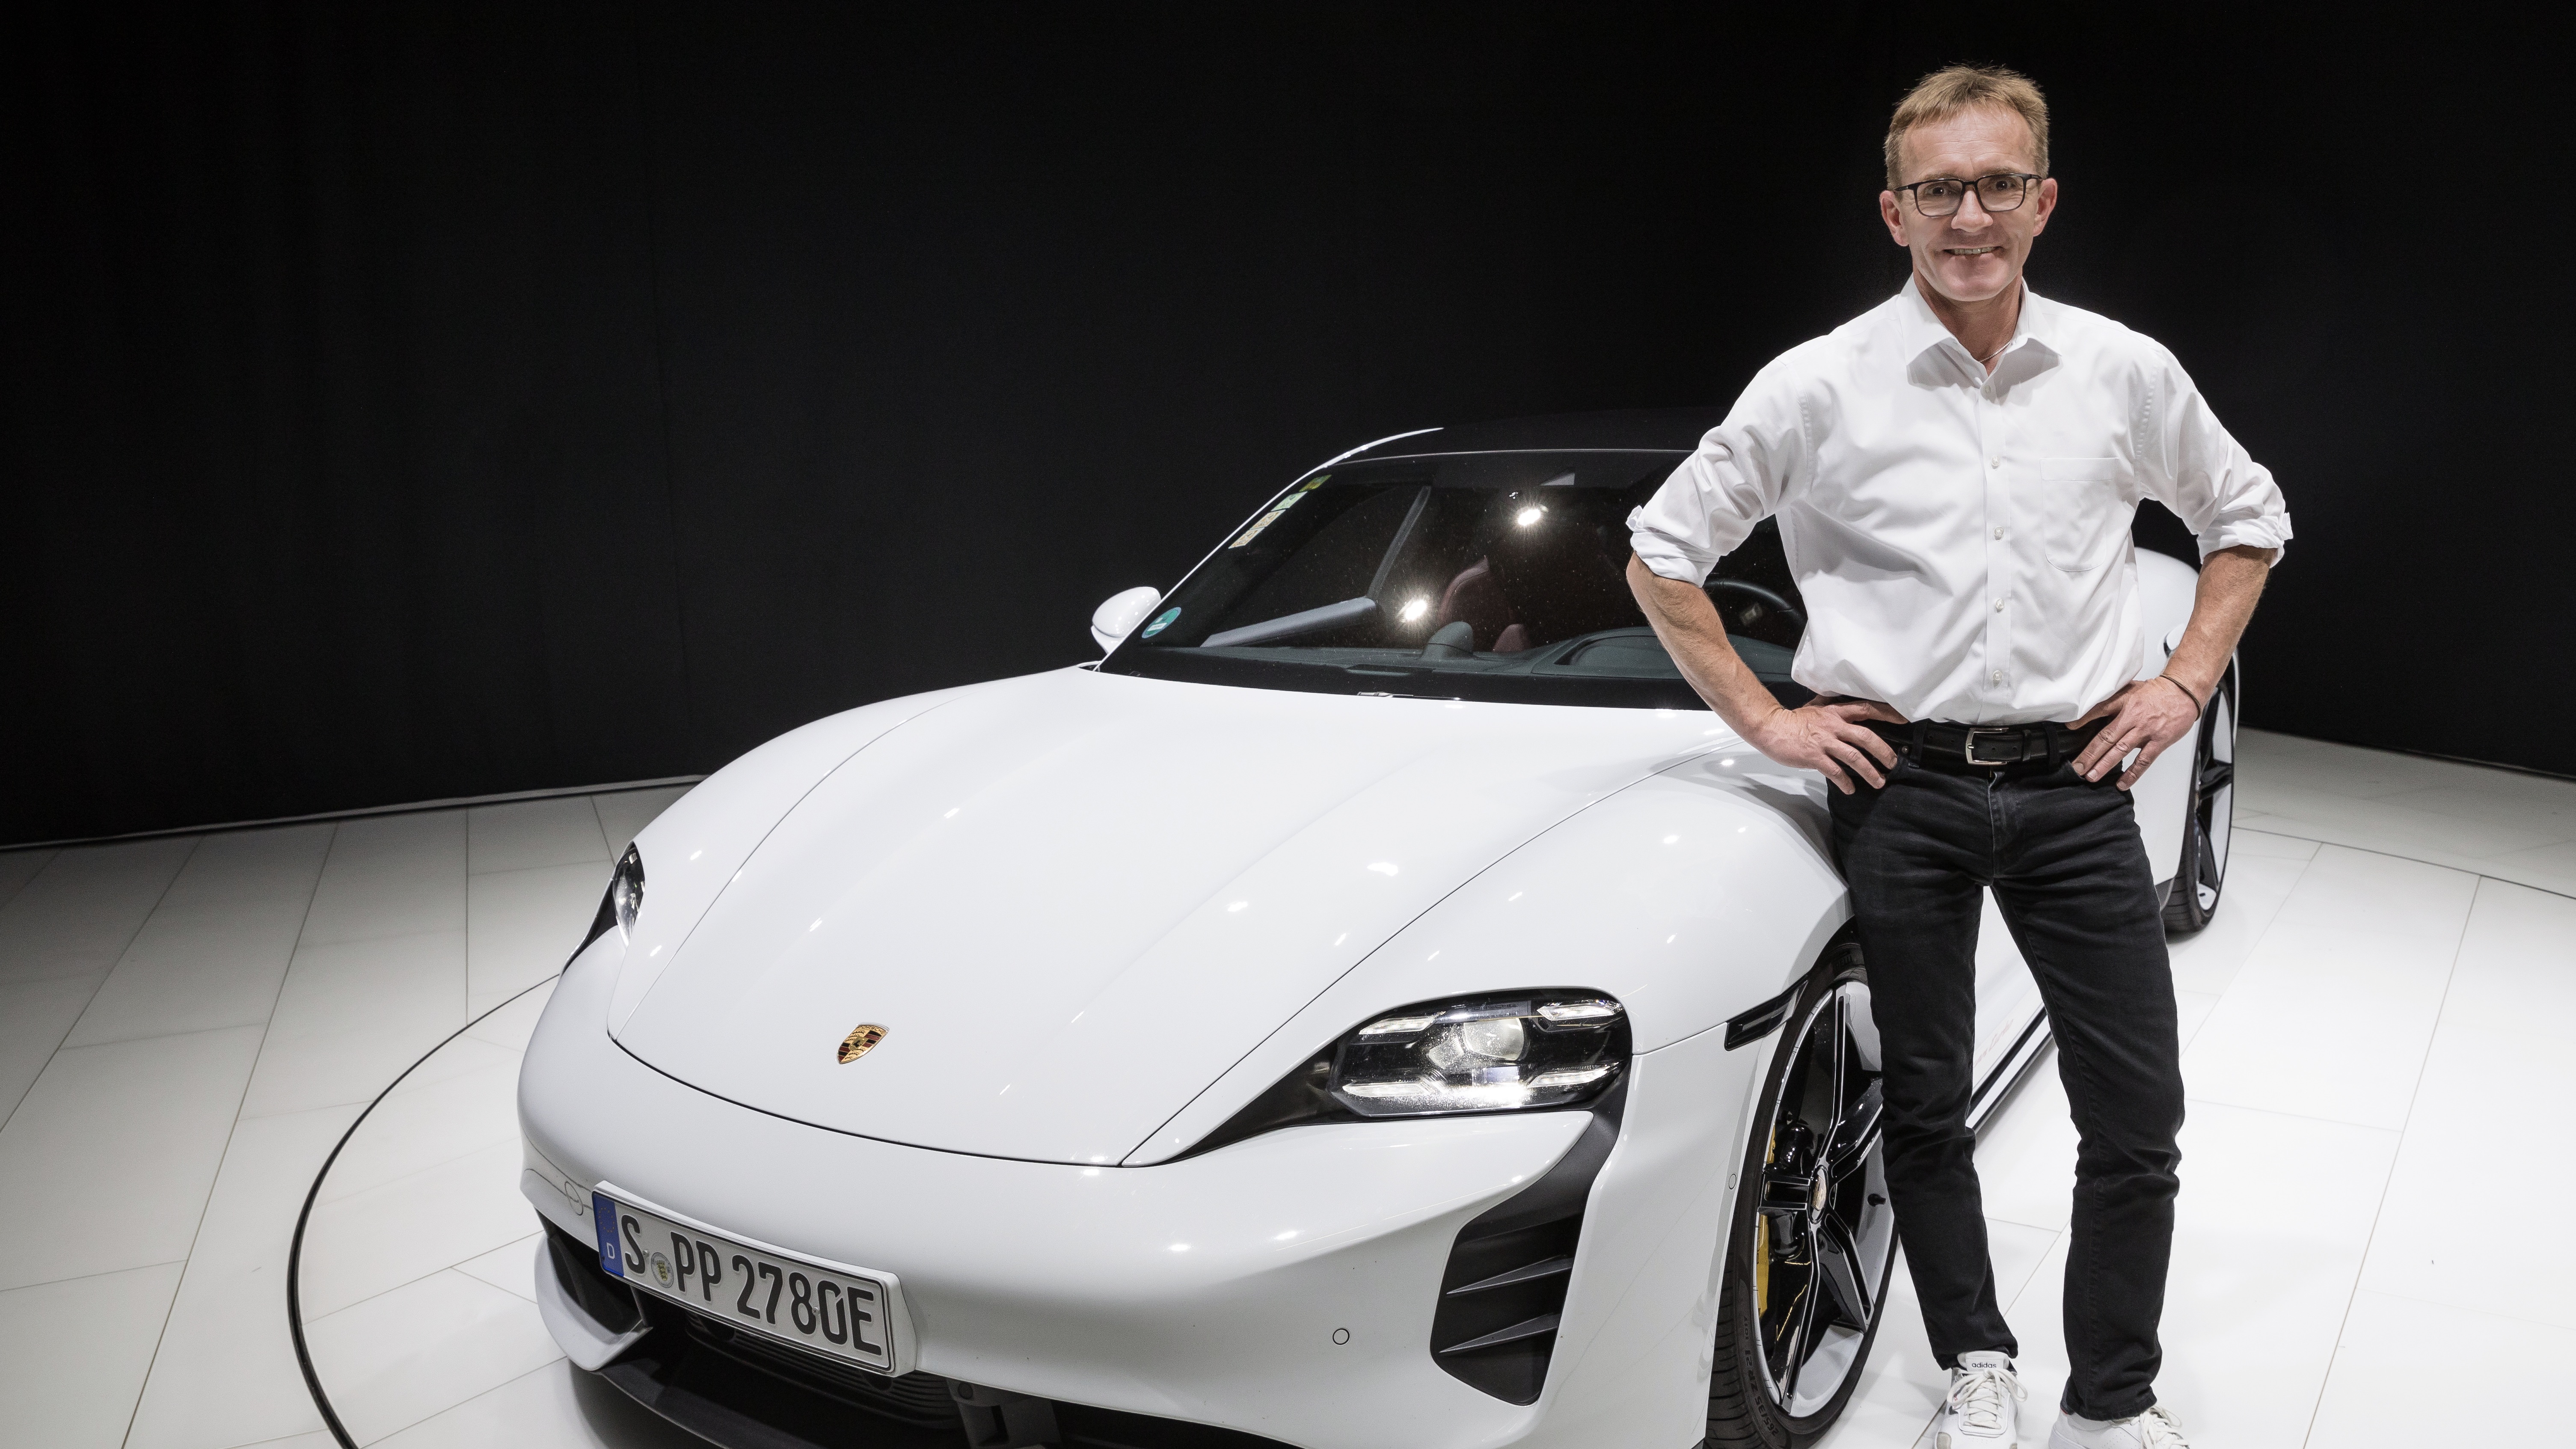 Markus Kreutel, con su Taycan Turbo de empresa cuando tenía 134 911 kilómetros, 2022, Porsche AG